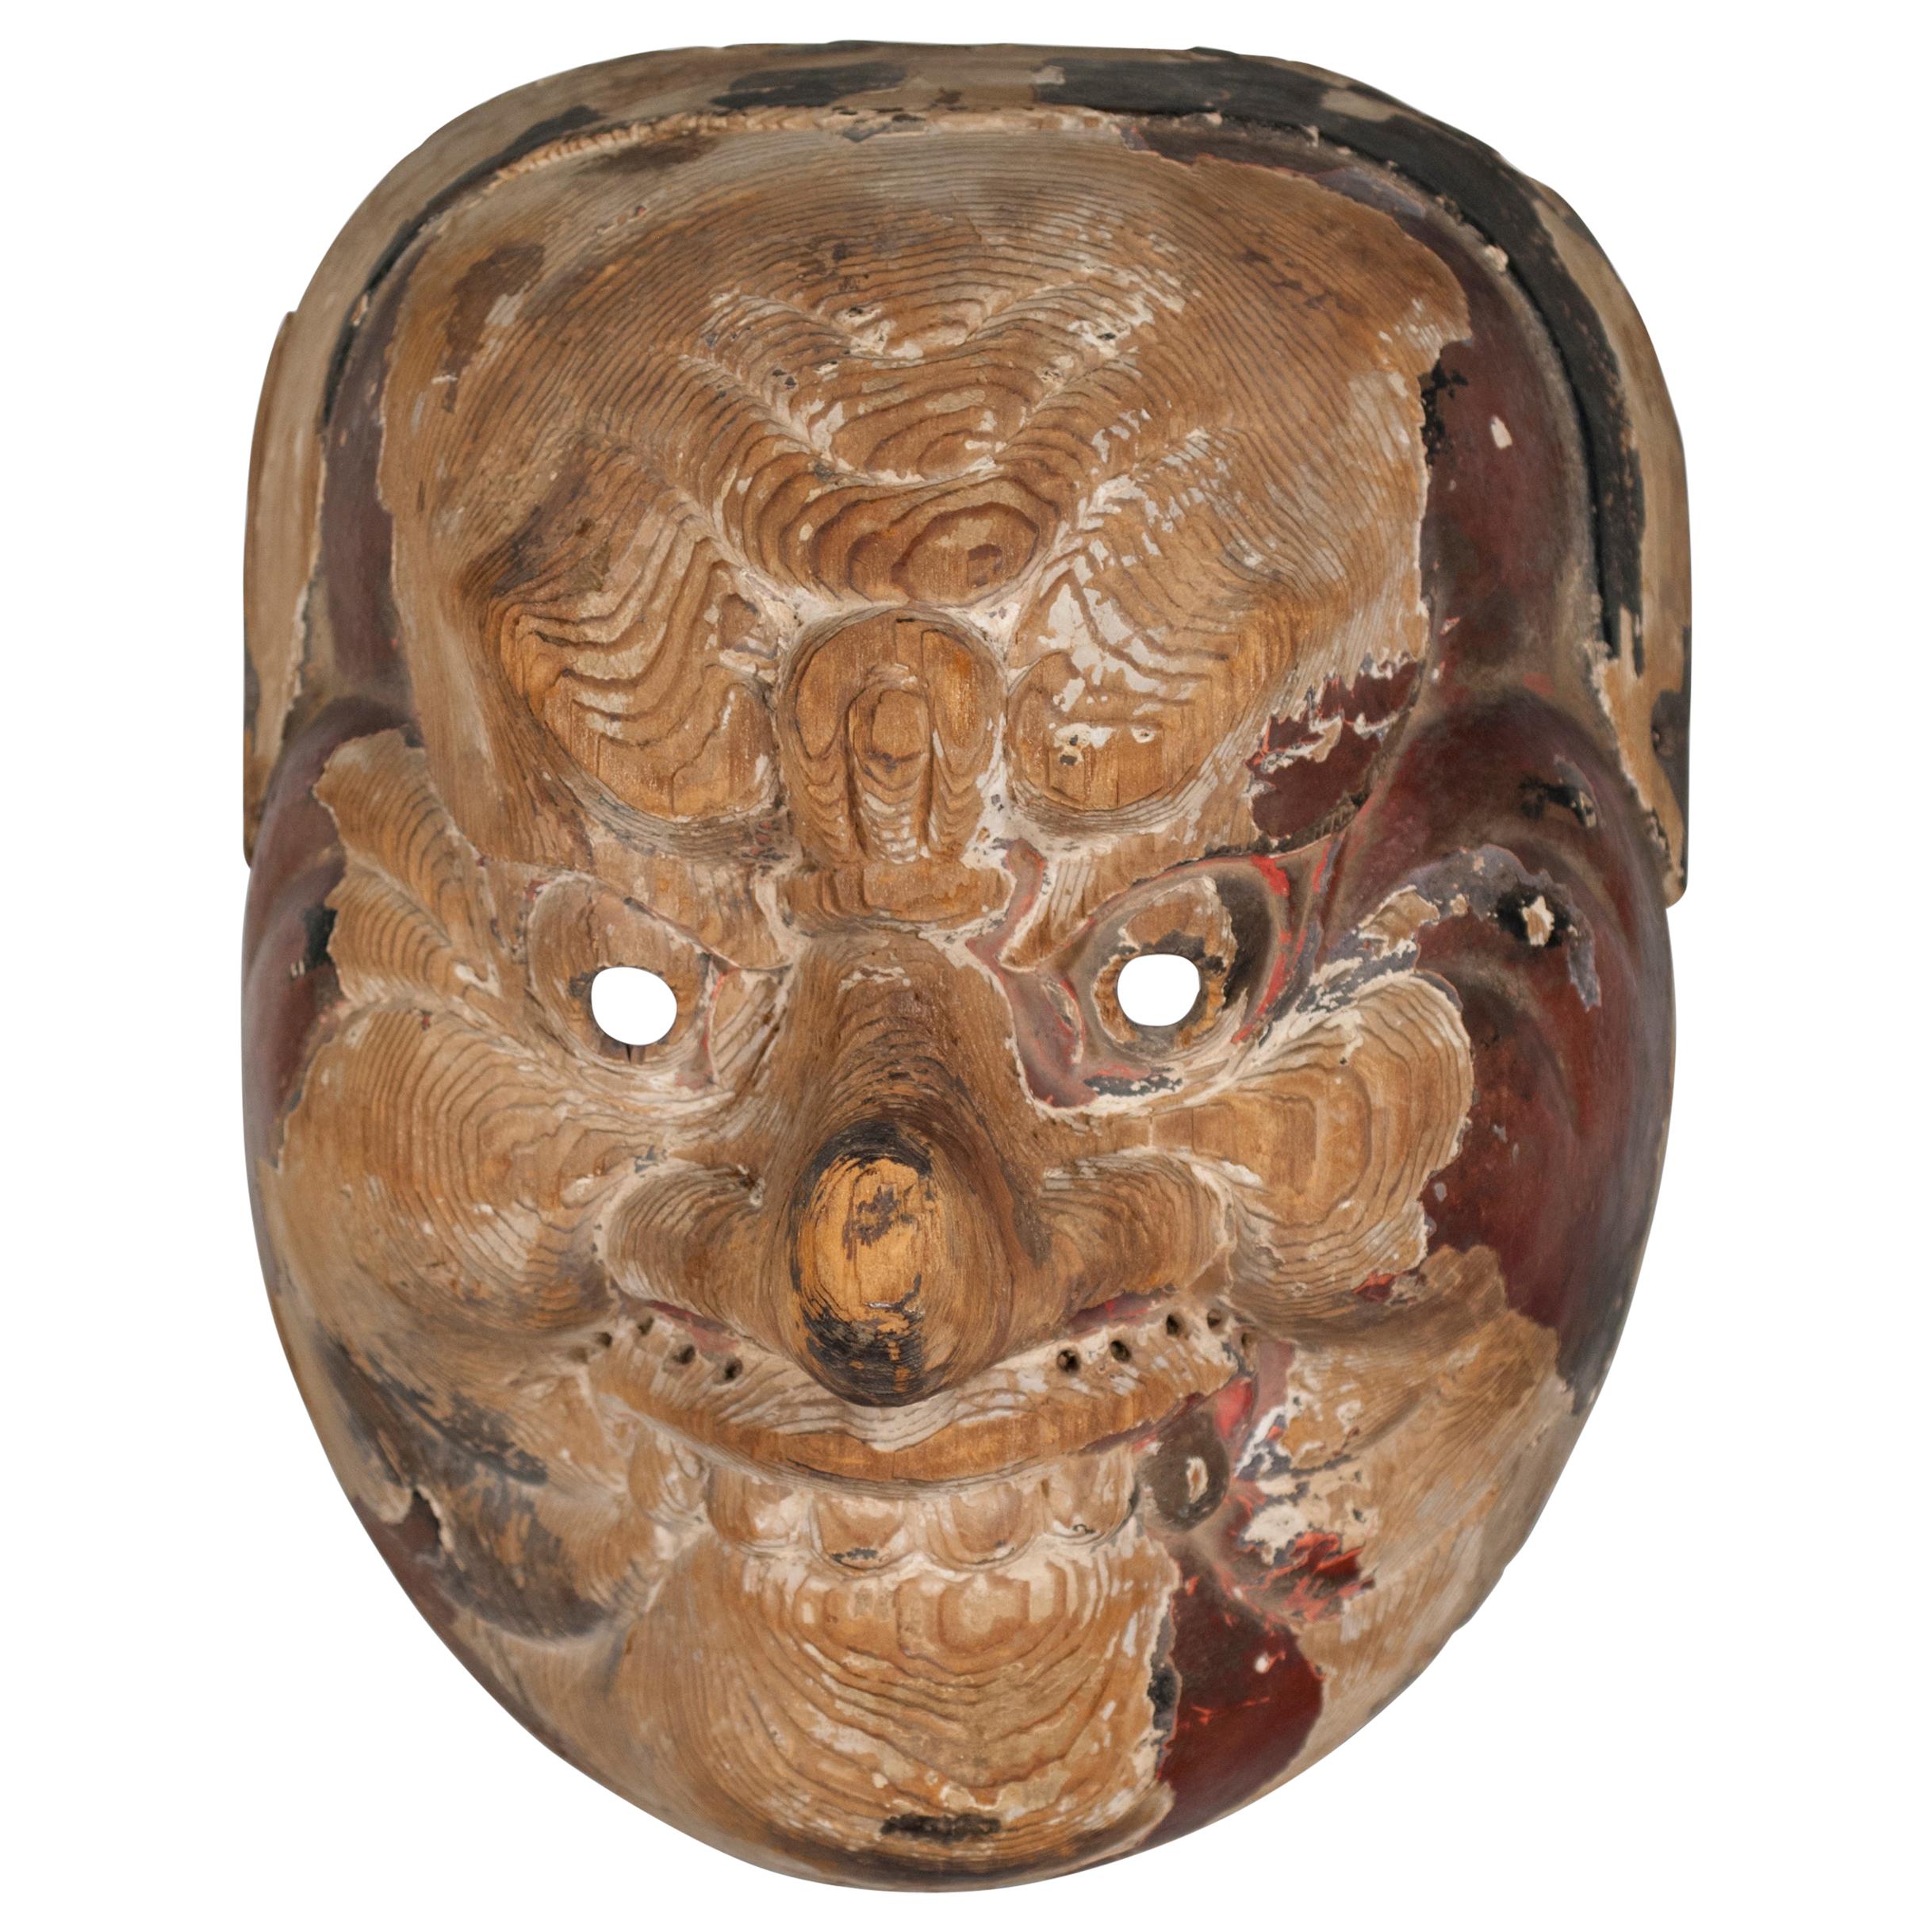 Japanese Court Dance Mask / Bugaku, circa 1800